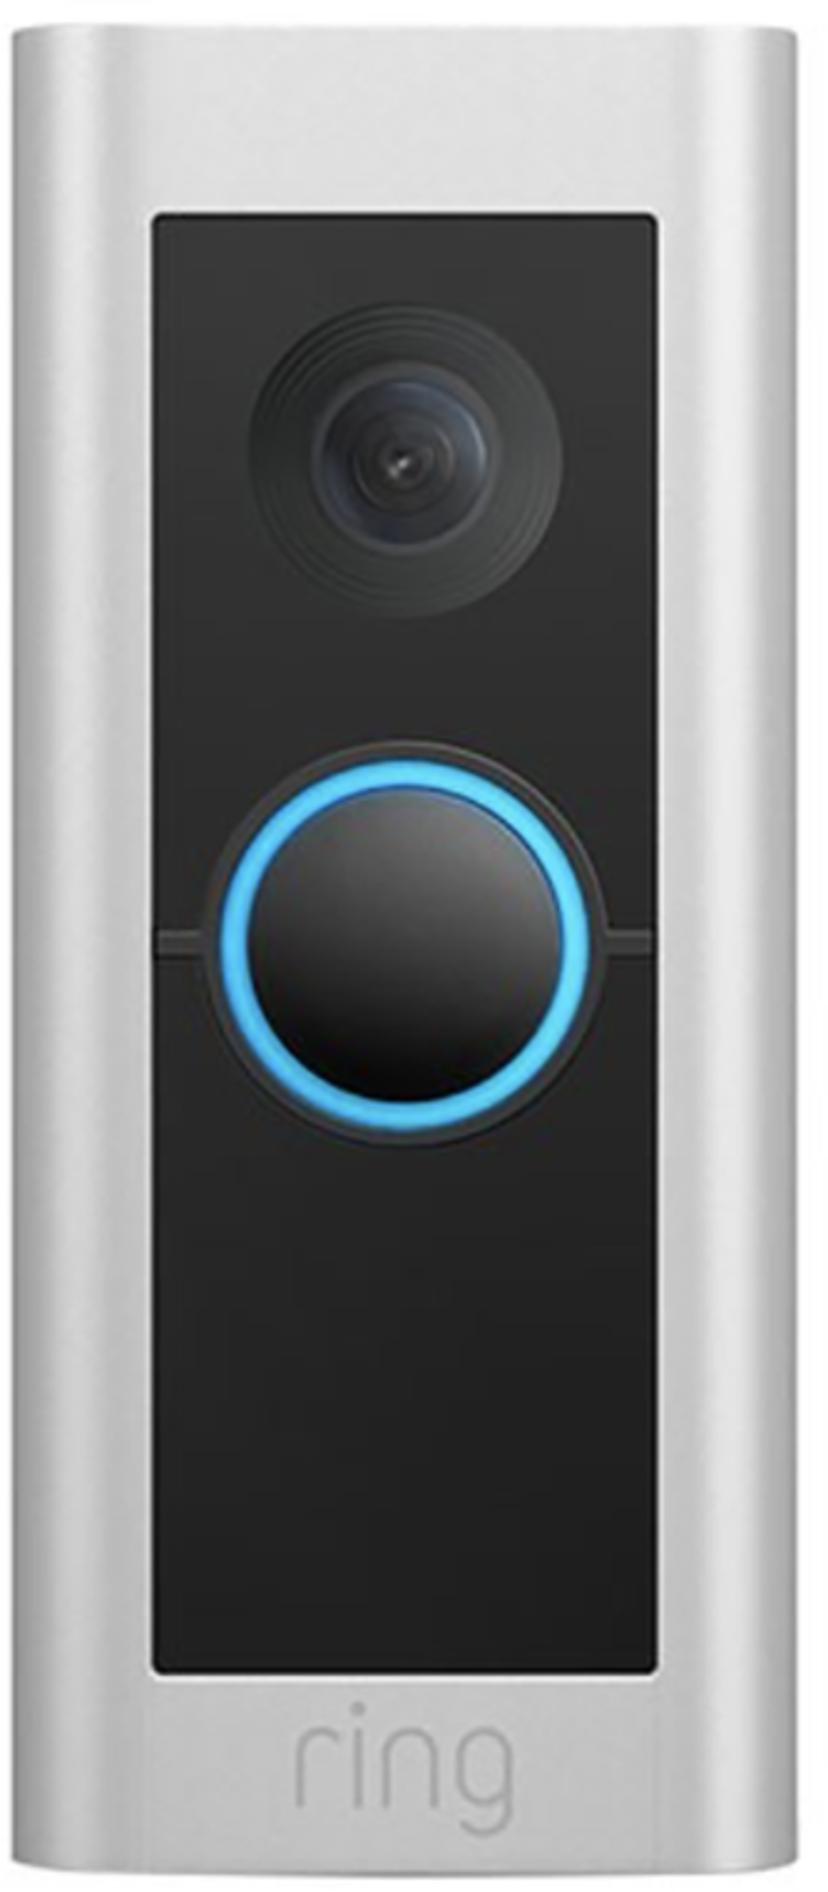 Ring Video Doorbell Pro 2, johdollinen